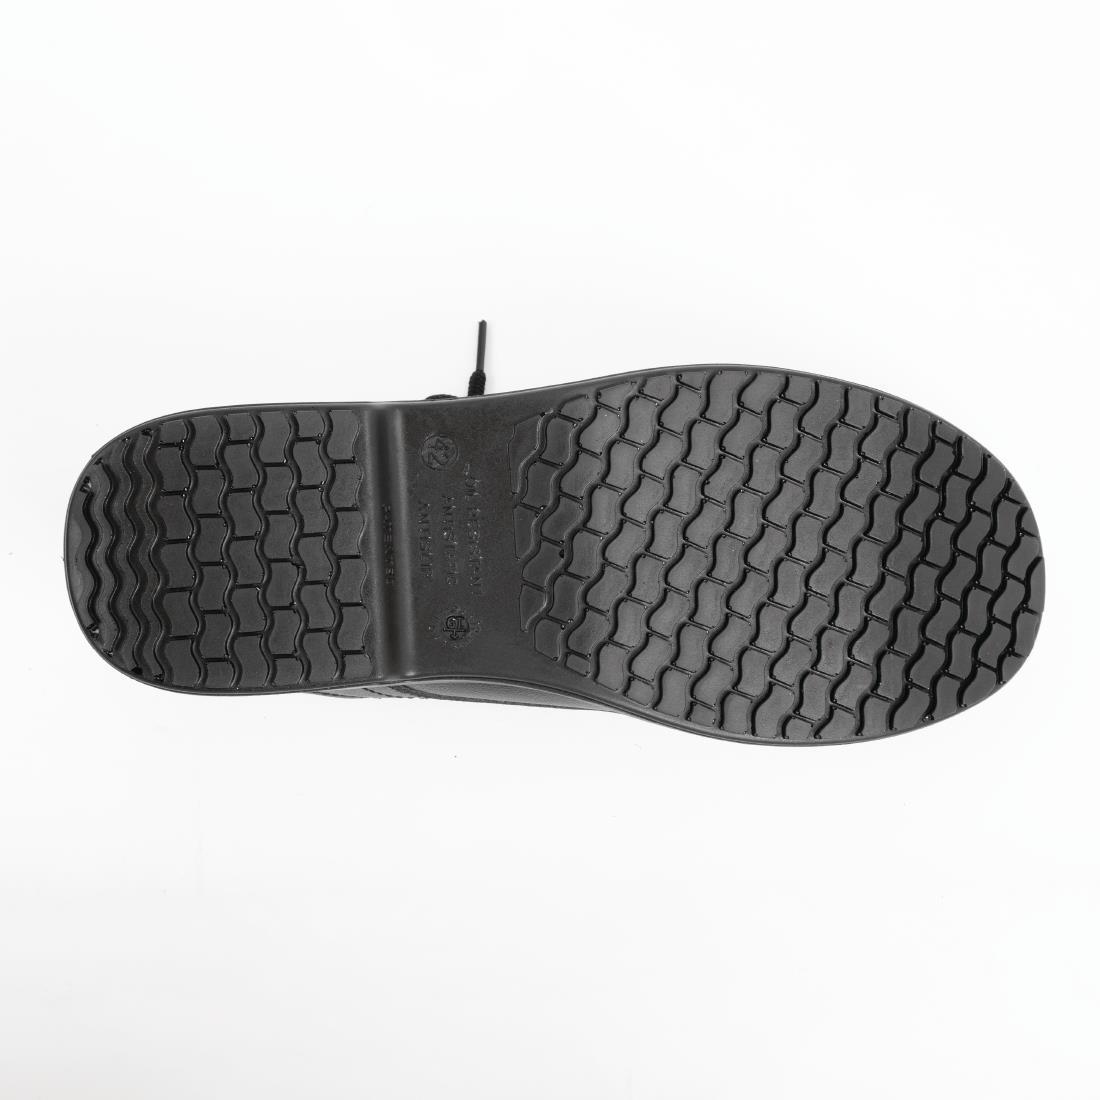 Slipbuster Basic Toe Cap Safety Shoes Black 36 - BB497-36  - 2